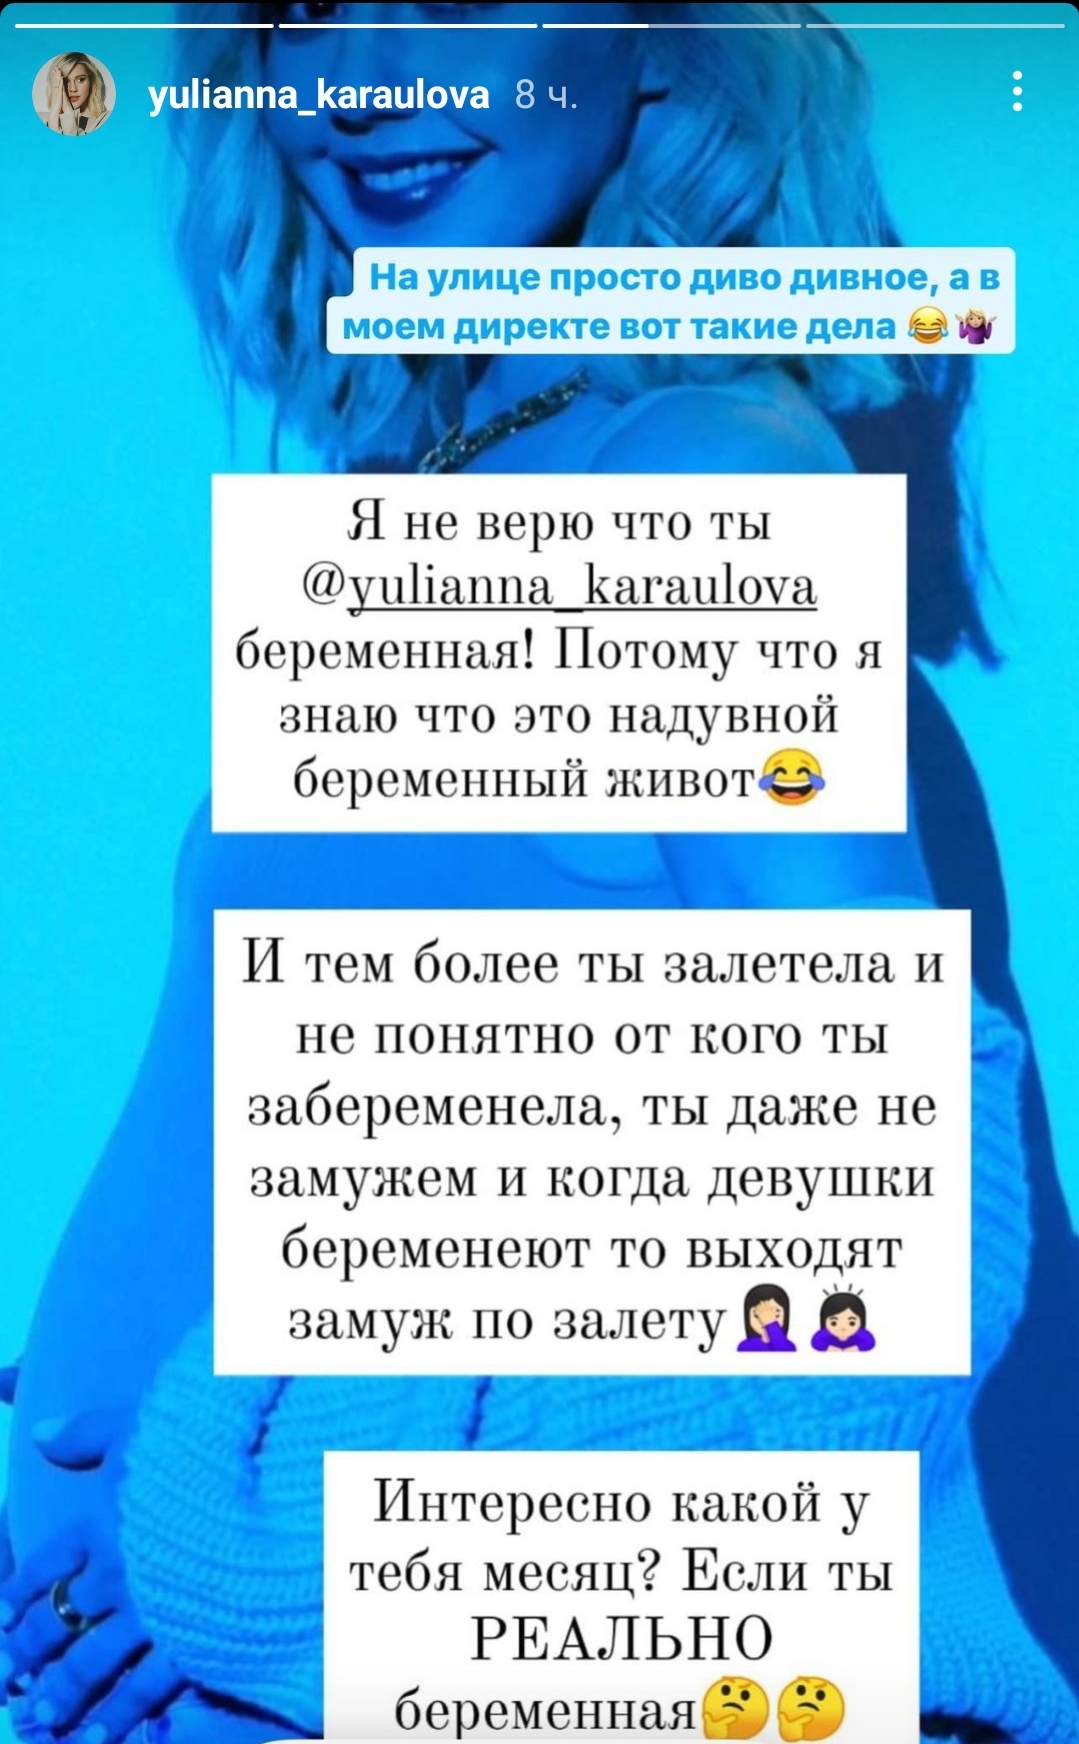 "Надувной живот": Юлианна Караулова ответила тем, кто не верит в её беременность